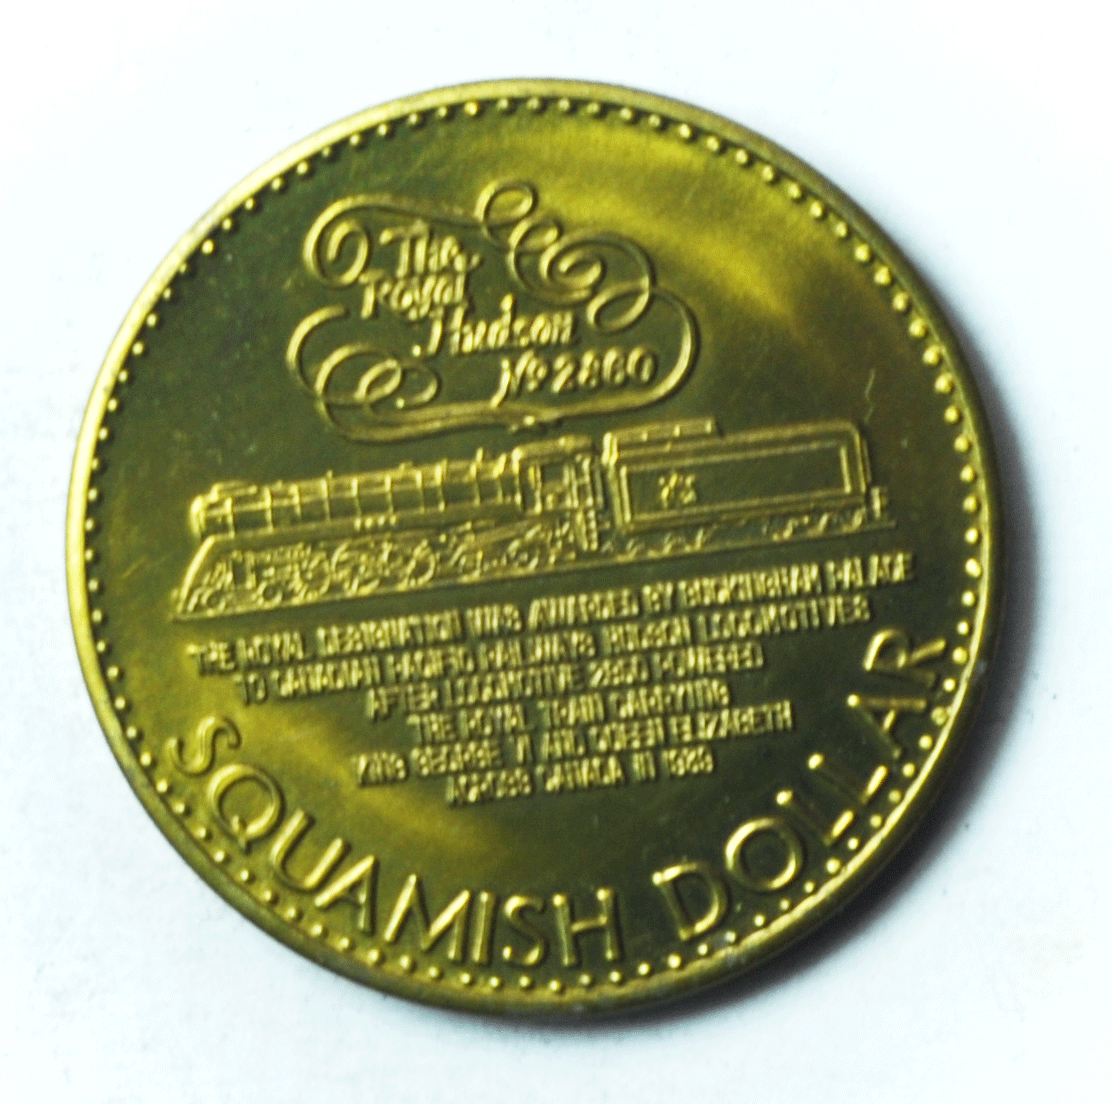 Squamish Days British Columbia Trade Dollar $1 Canada 1984 Royal Hudson